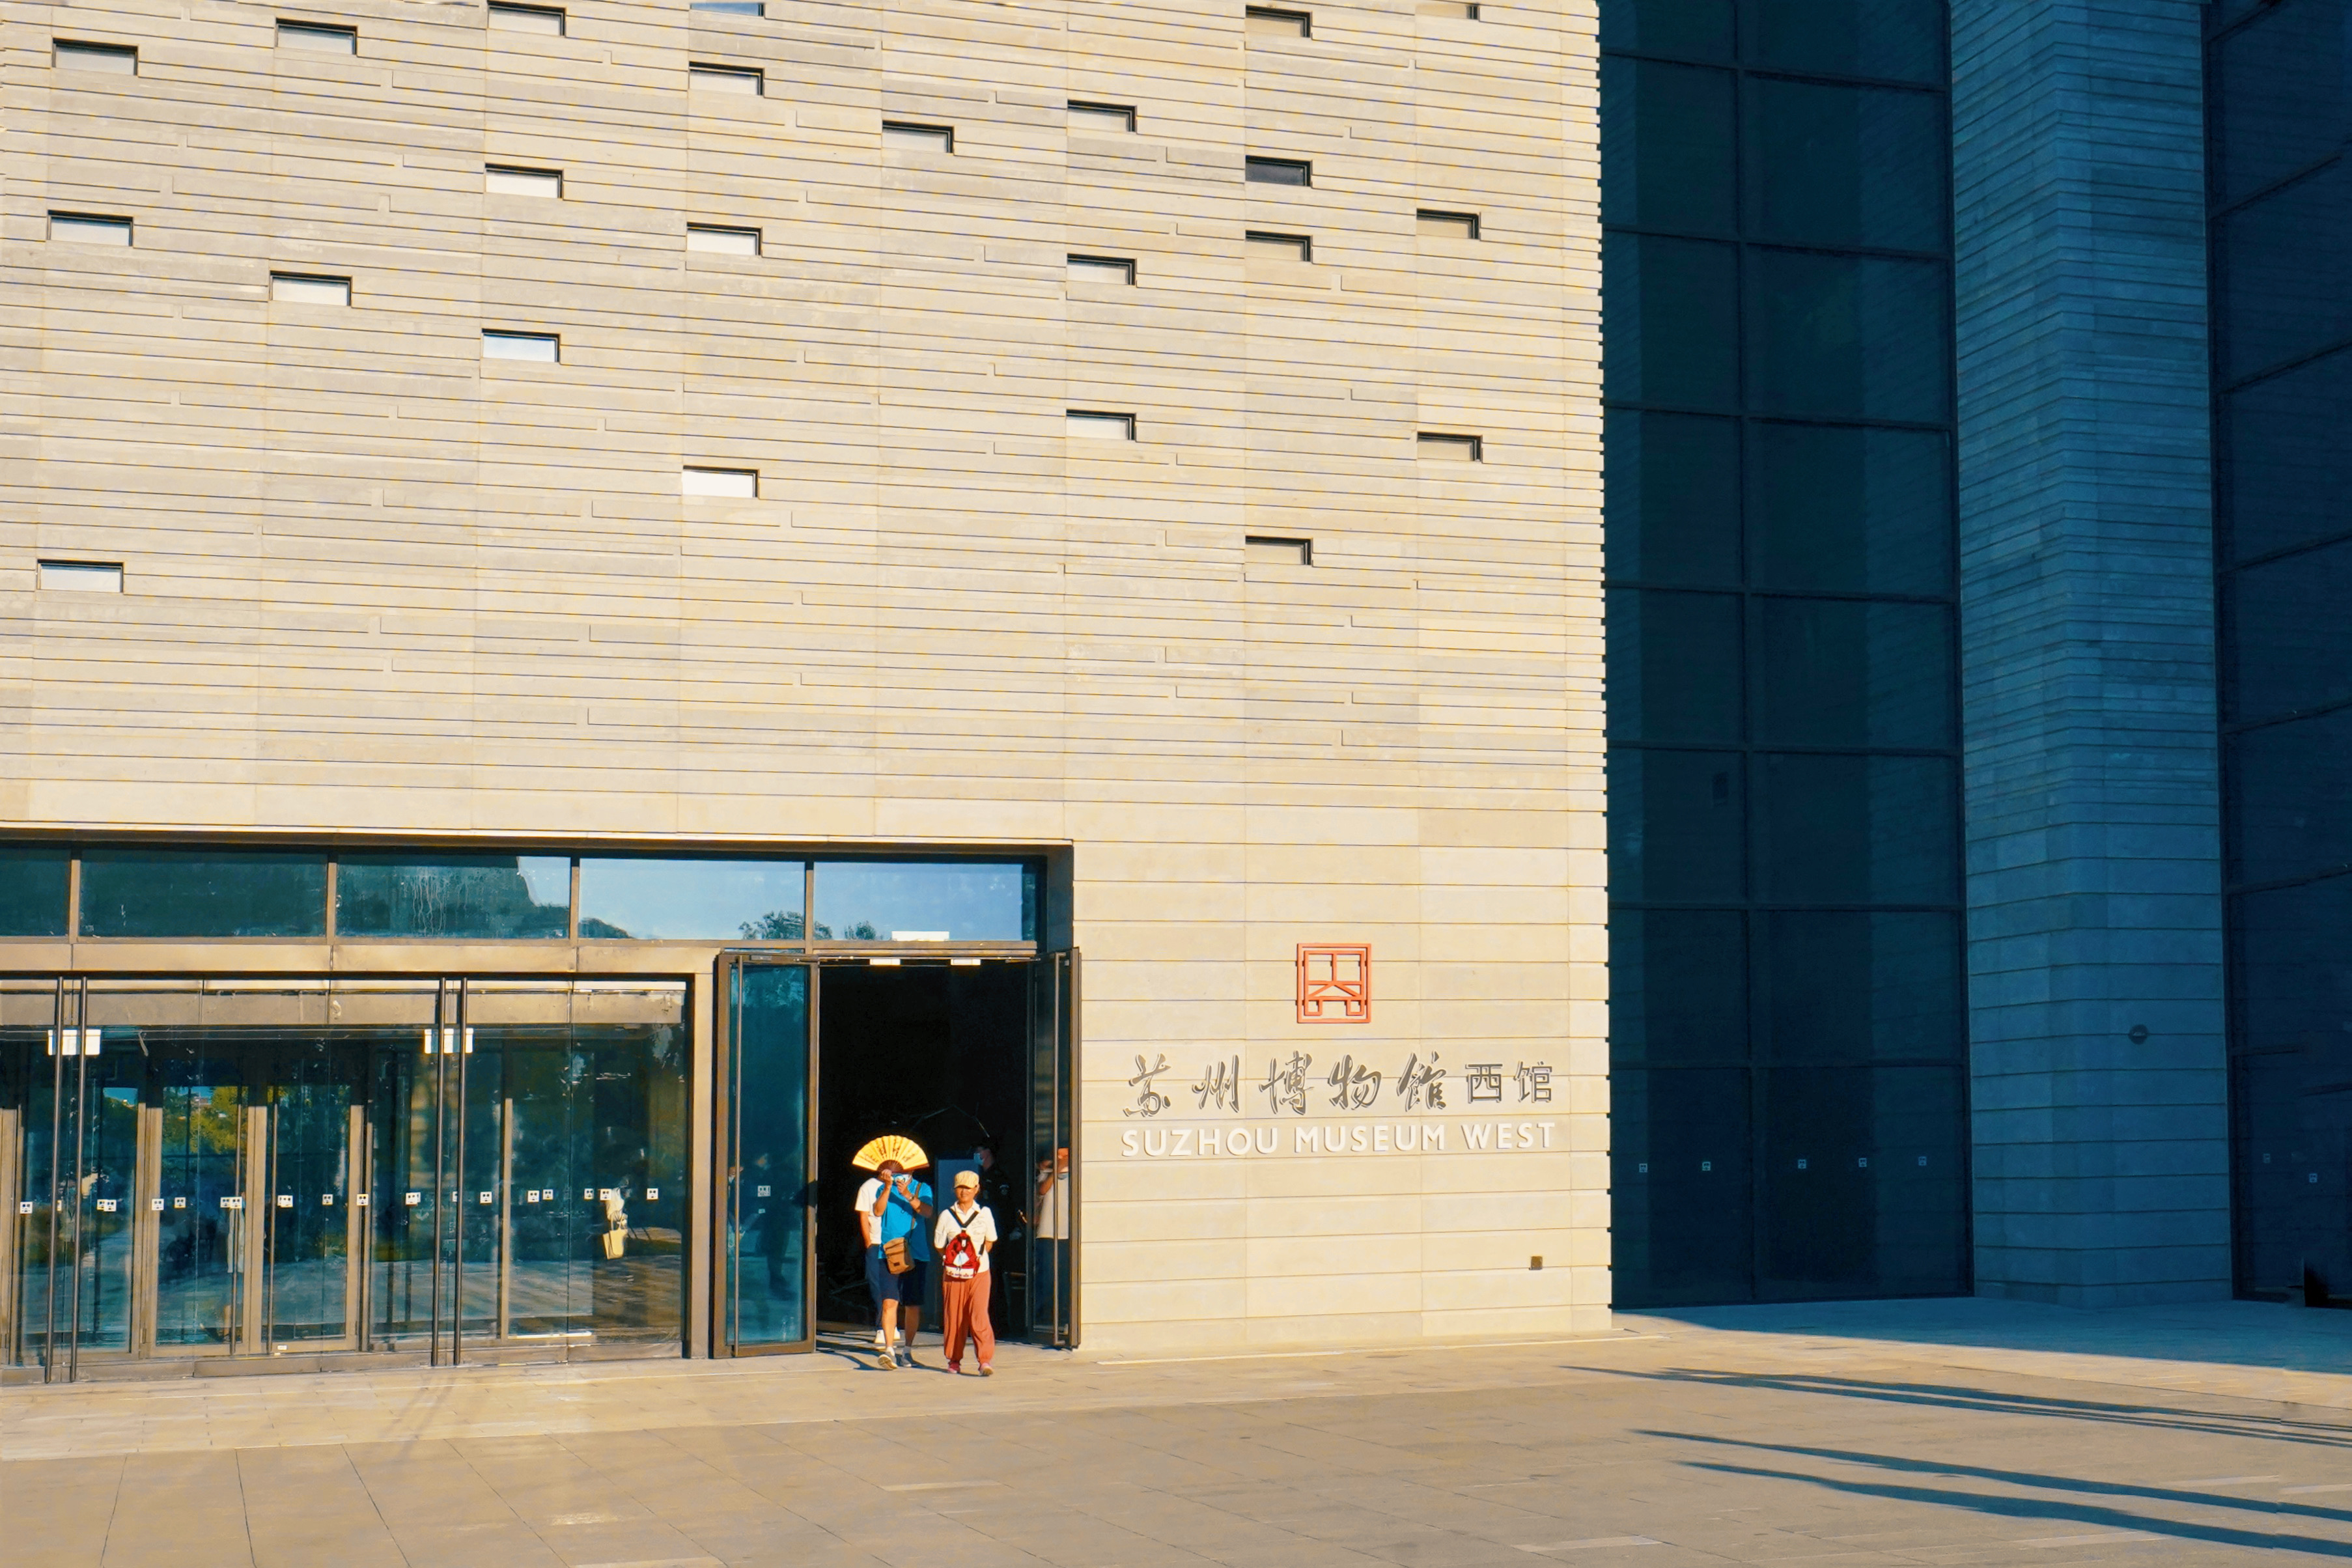 提前看苏州博物馆西馆，看完你觉得能超越本馆吗？